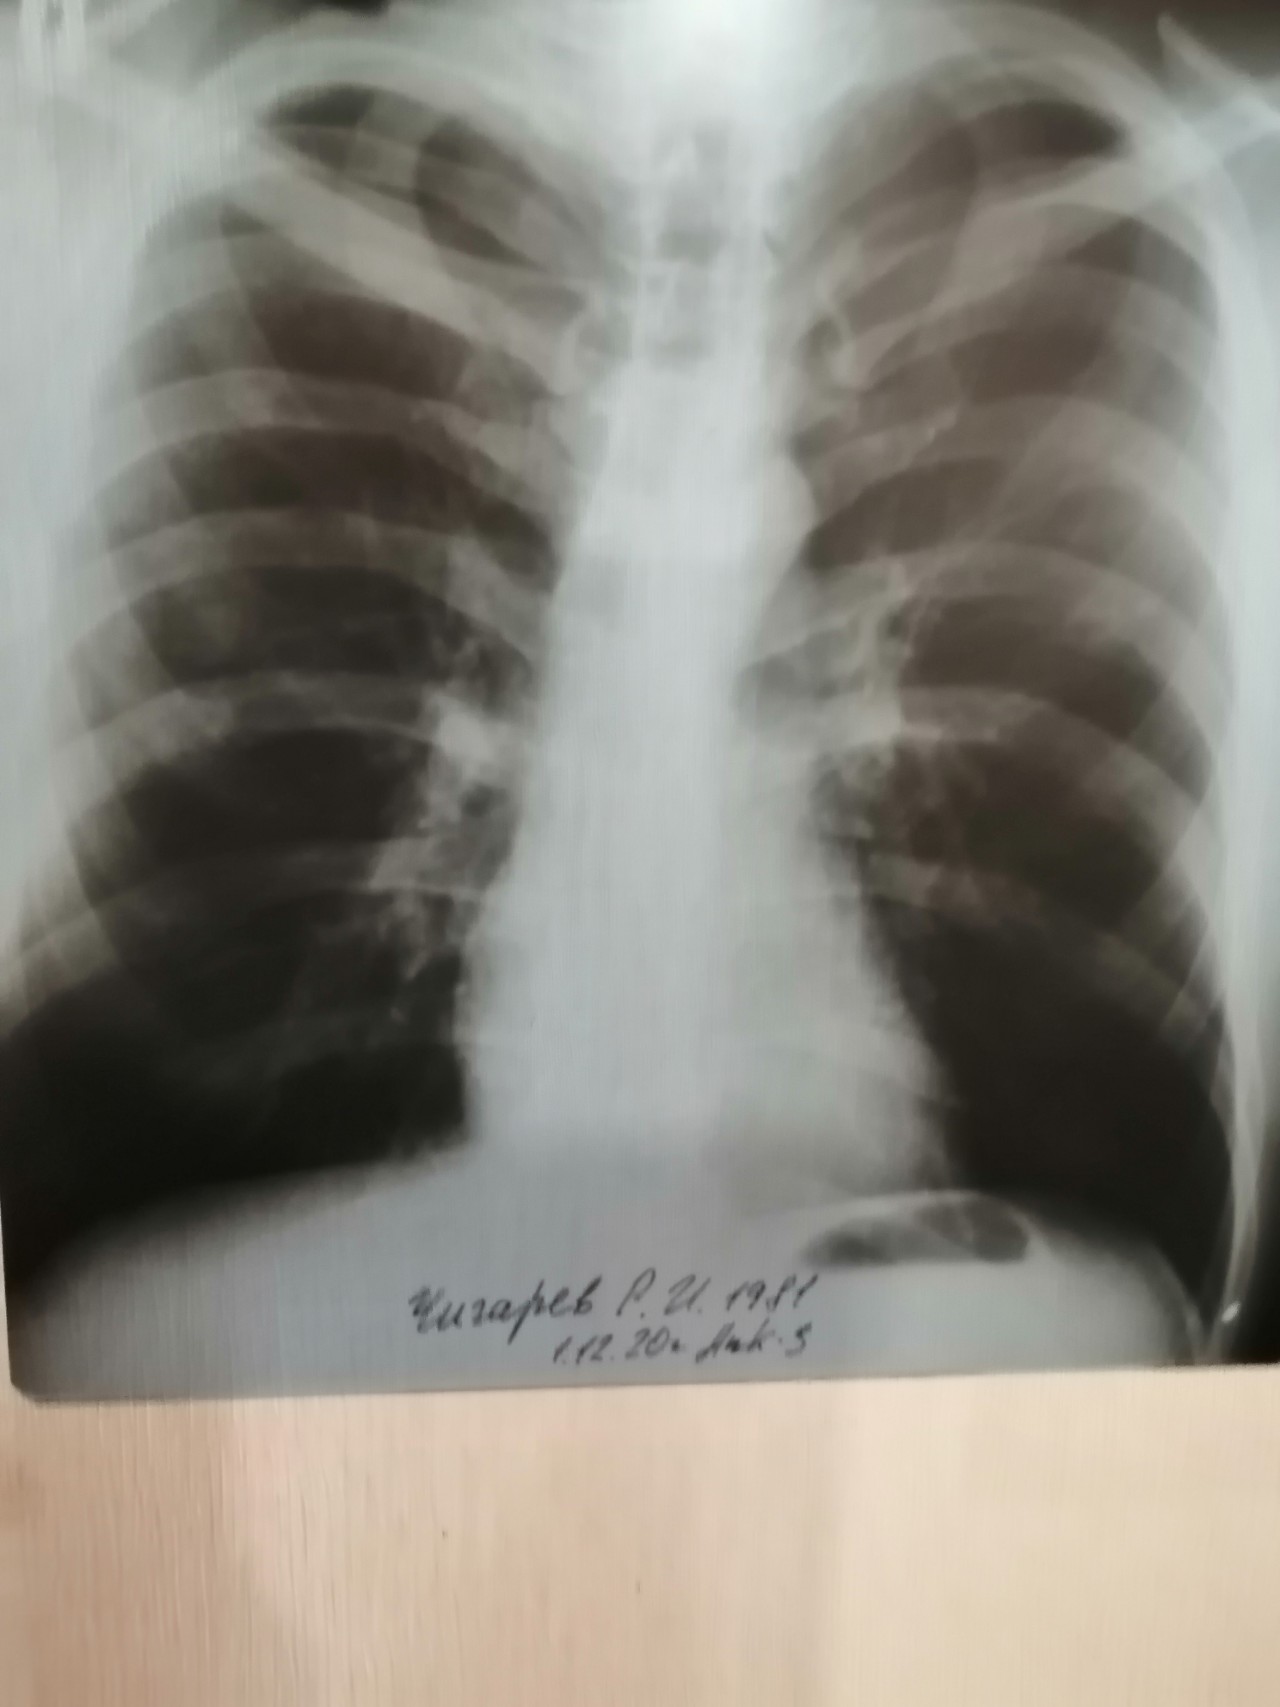 Поражение легких 3. Снимок лёгких при туберкулезе фото. 69 % Поражение лёгких. Инфертивное поражение легких.